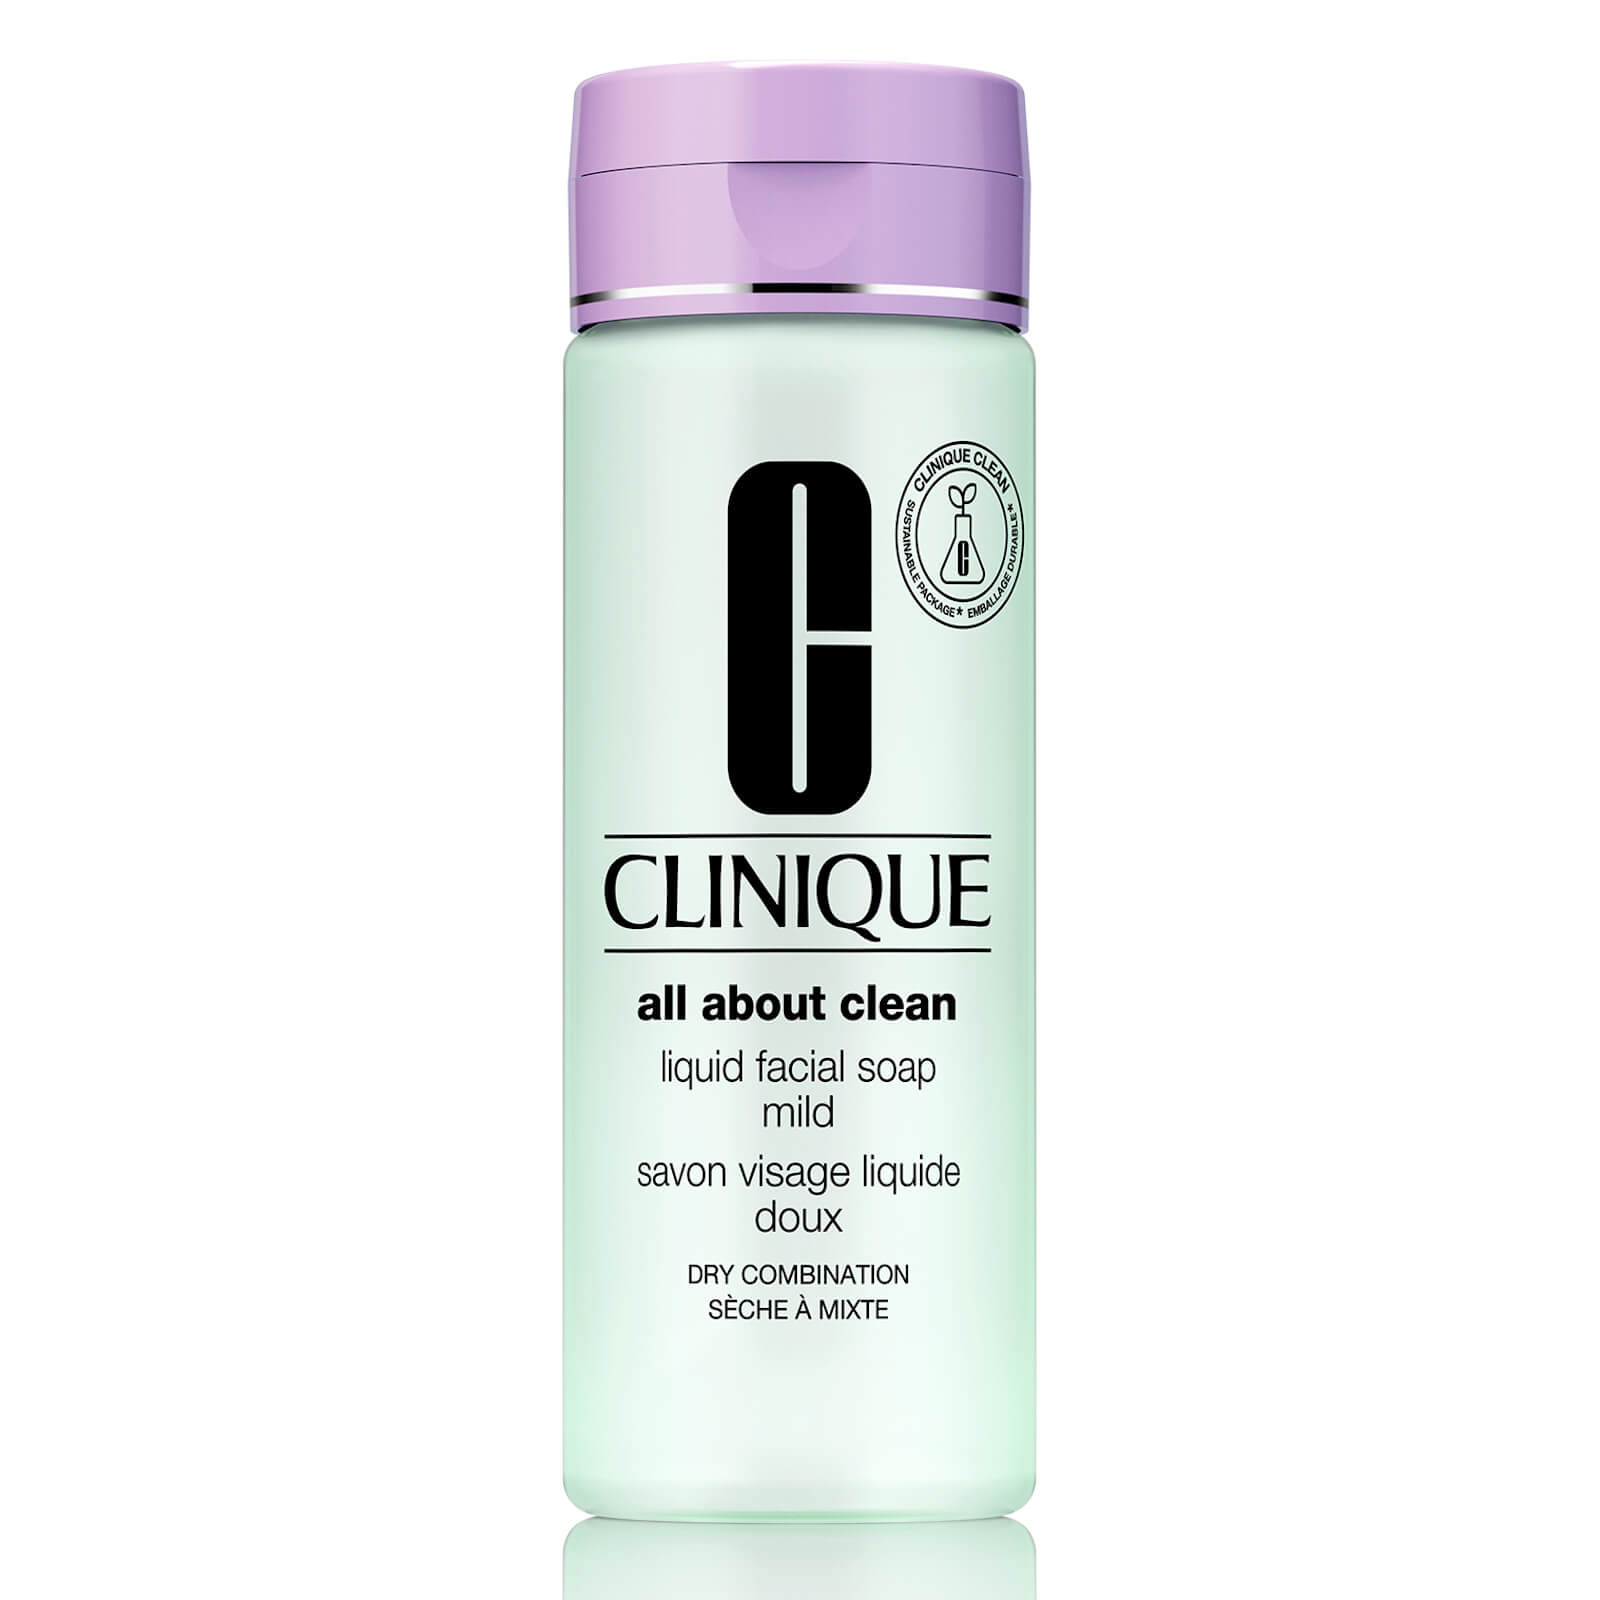 Clinique Liquid Facial Soap Mild sapone liquido delicato